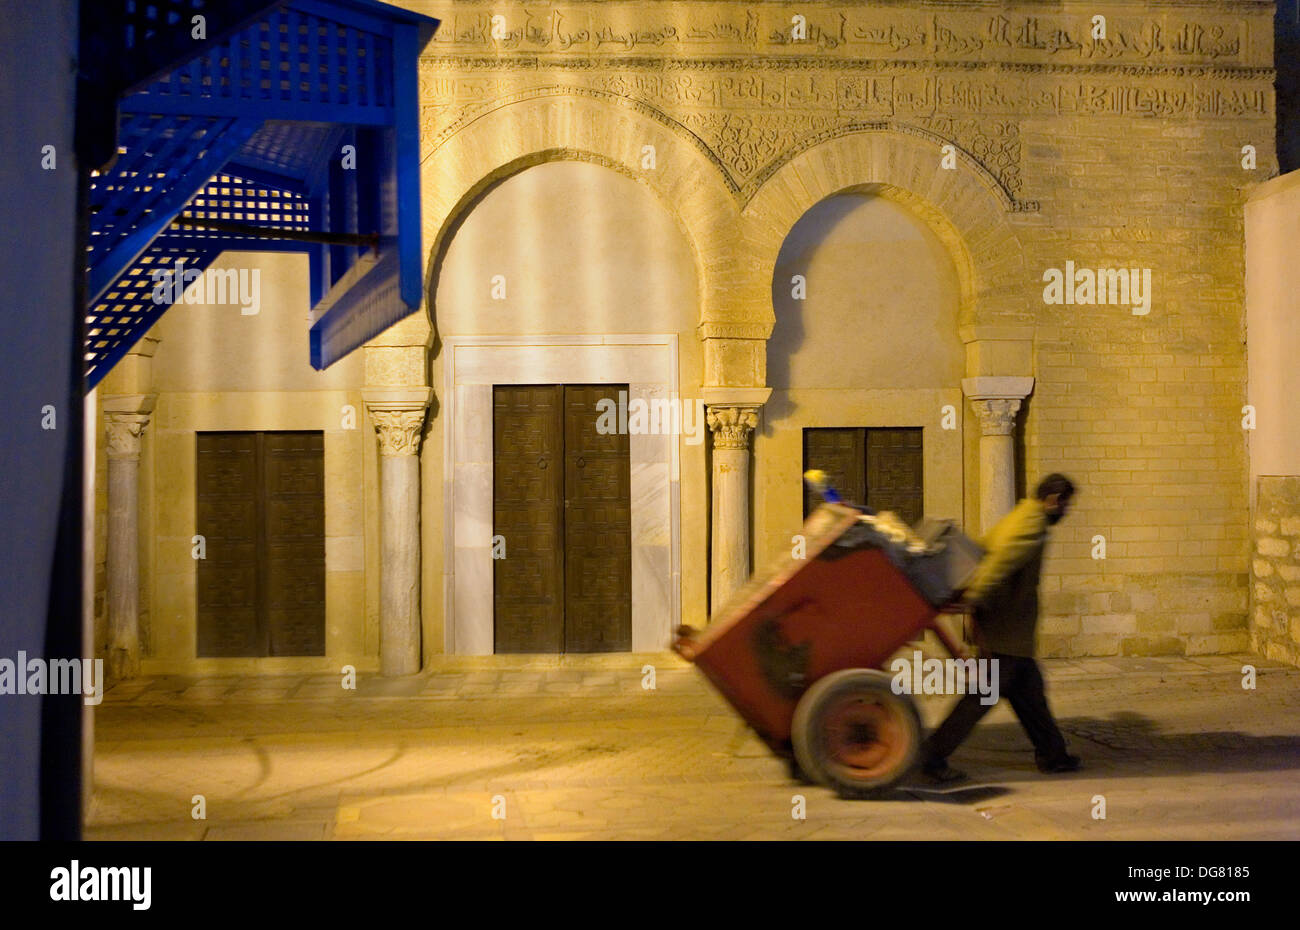 Mezquita de las tres puertas fotografías e imágenes de alta resolución -  Alamy